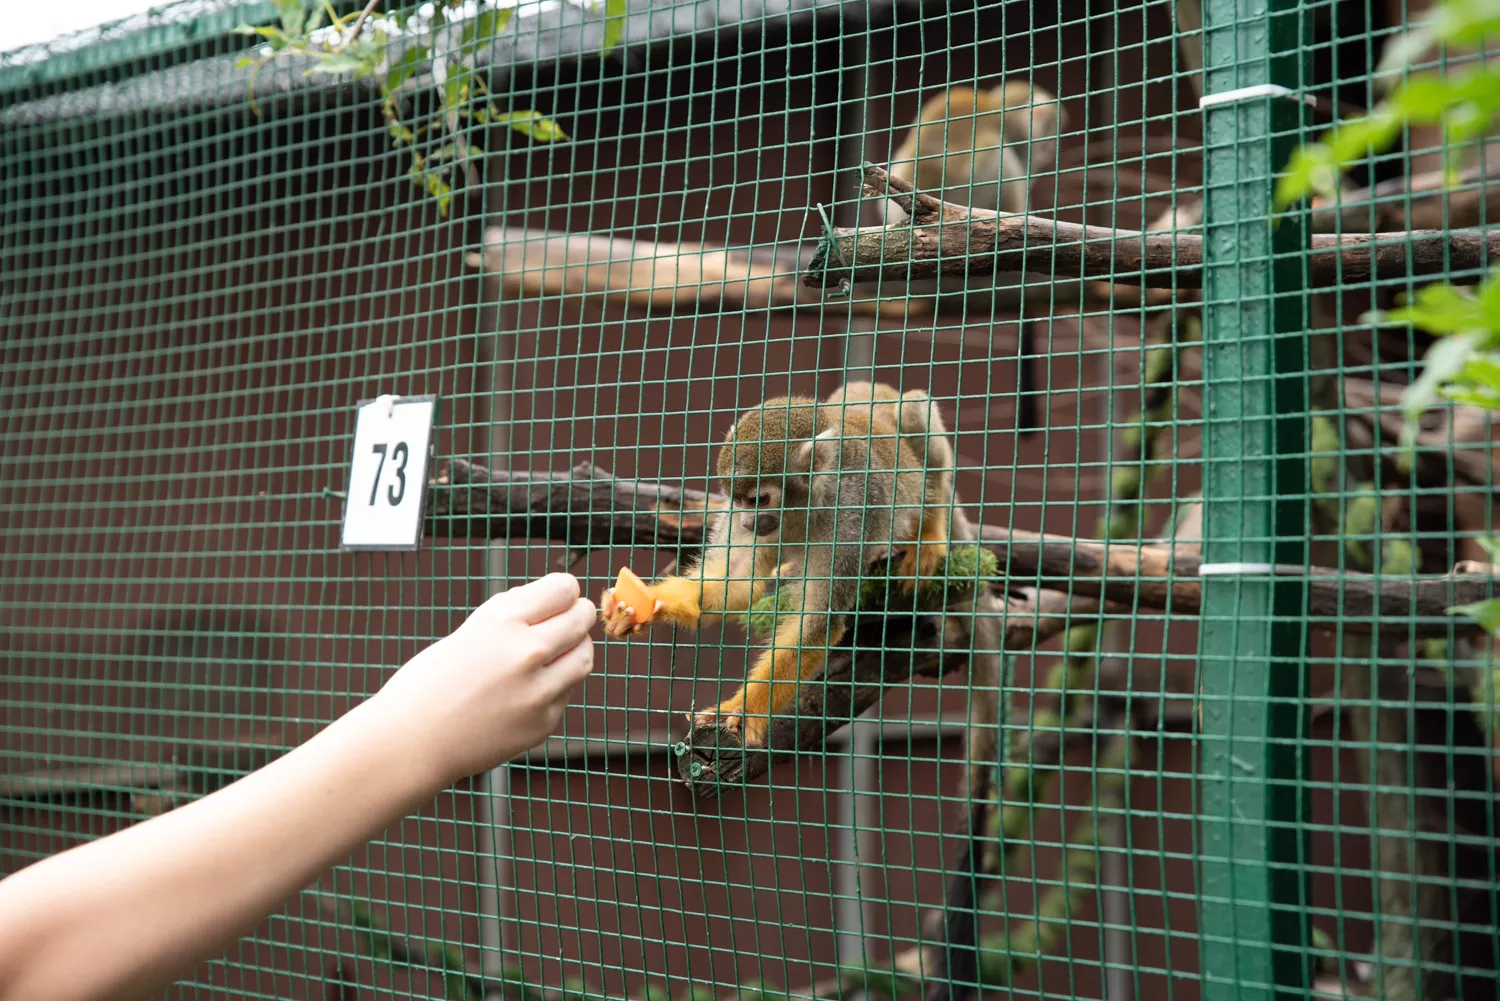 Kŕmenie opičiek (©miribord)